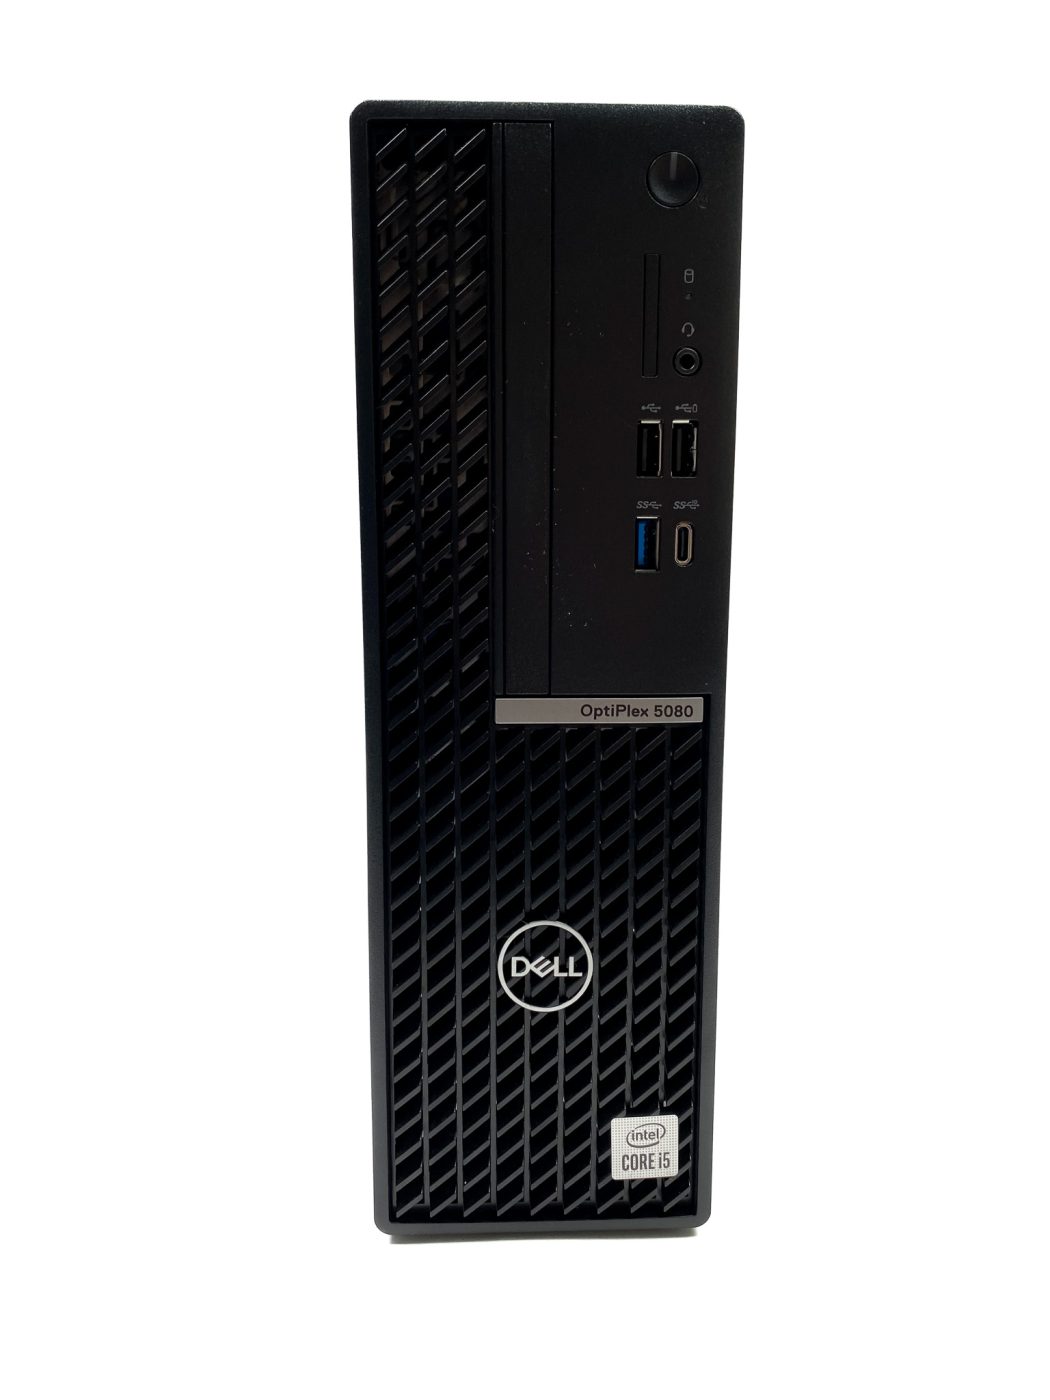 Komputer Dell Optiplex 3060 SFF – idealne połączenie wydajności i kompaktowości
